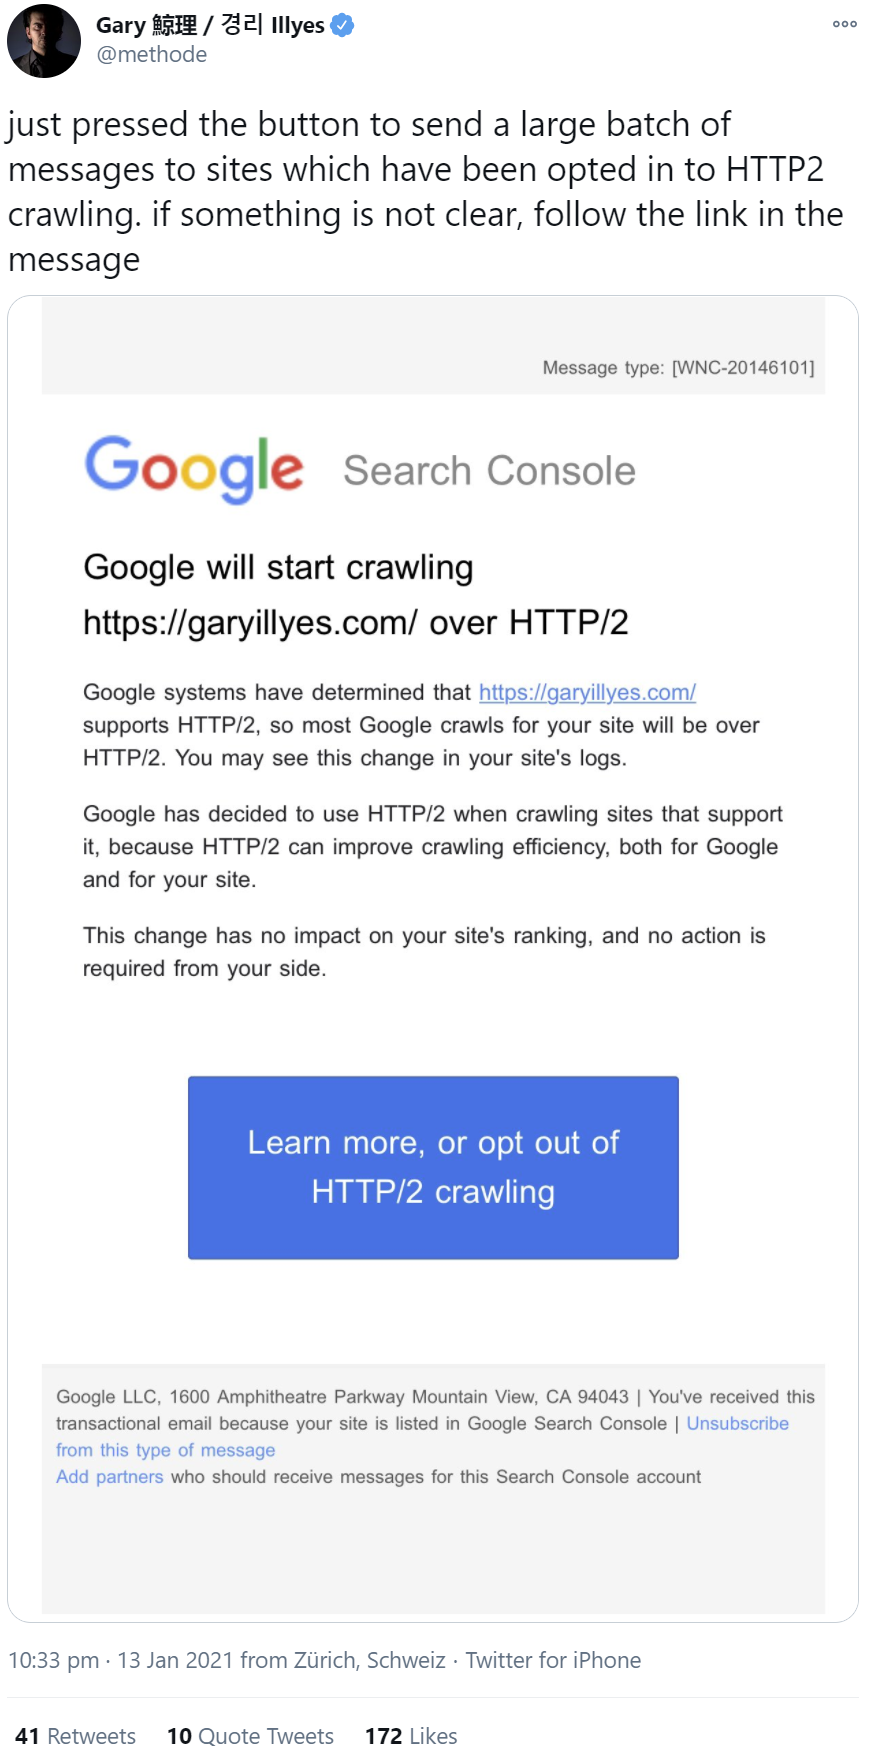 Google benachrichtigt Betreiber ausgewählter Websites über die Umstellung des Crawlens auf HTTP/2